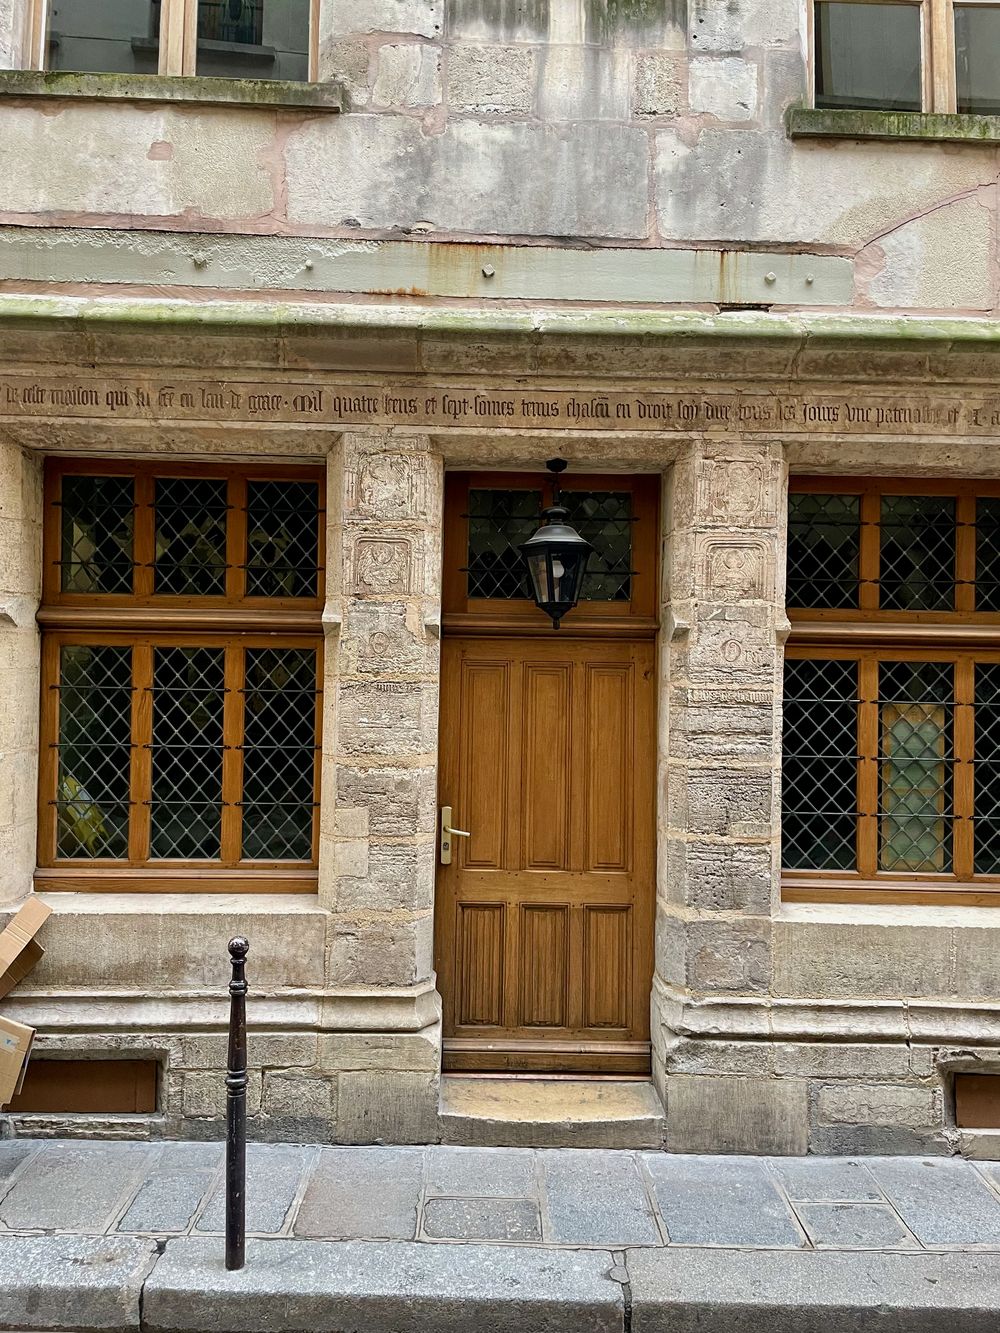 Maison Nicolas Flamel, oldest house in Paris